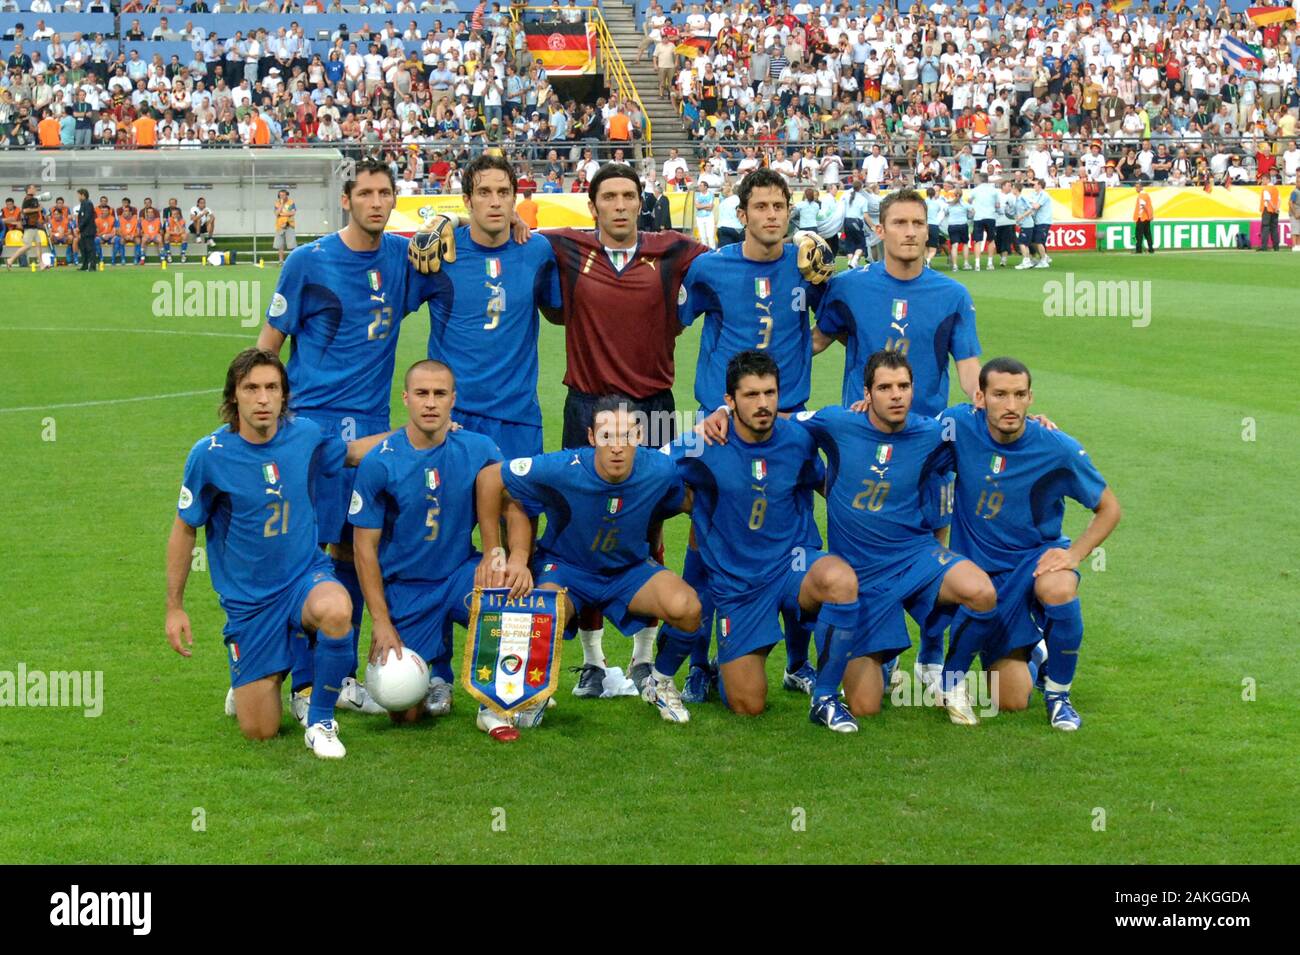 Mondiali 2006 immagini e fotografie stock ad alta risoluzione - Alamy